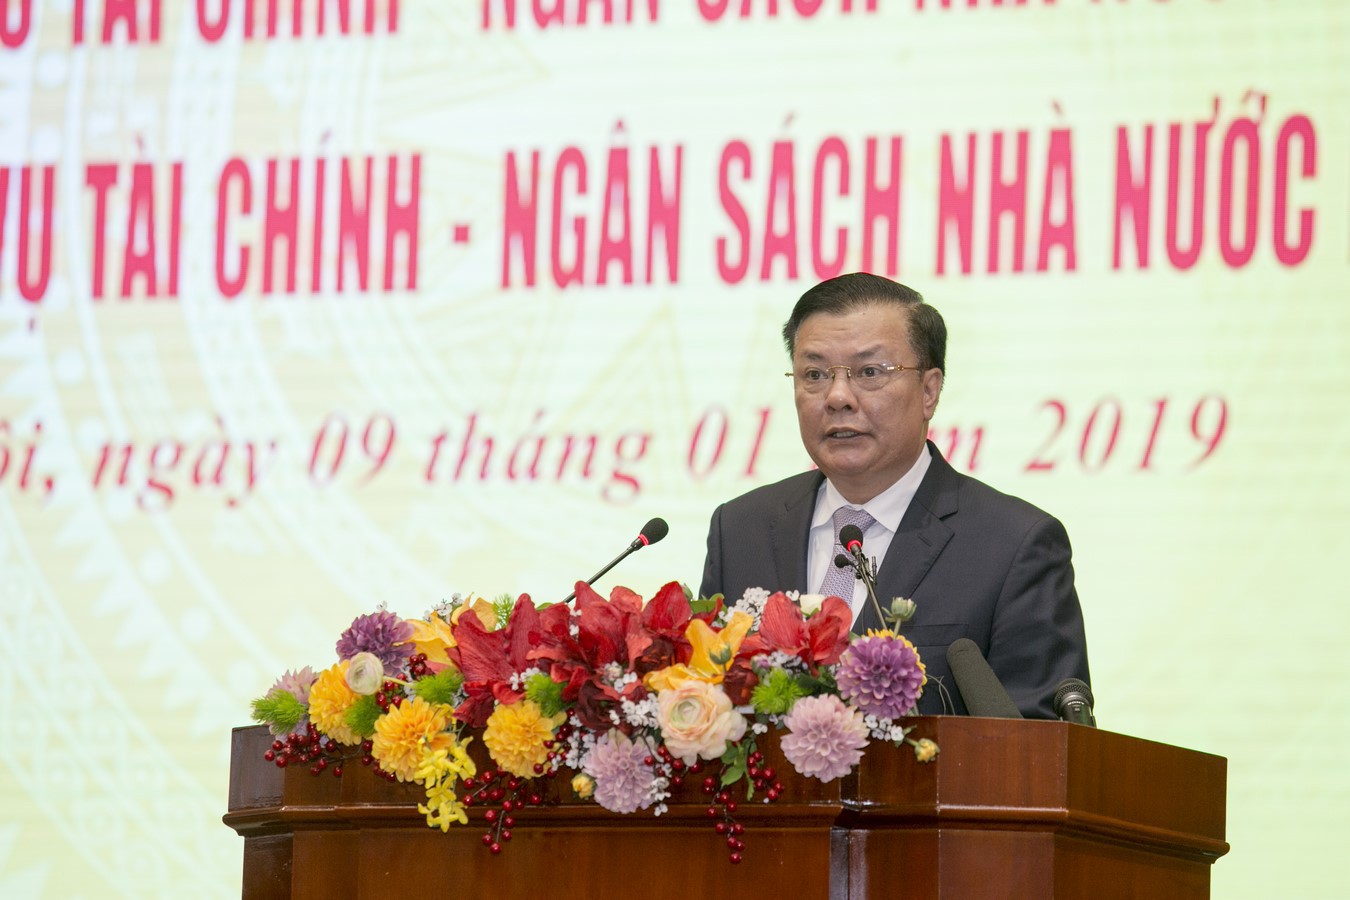 Bộ trưởng Đinh Tiến Dũng phát biểu về việc thực hiện nhiệm vụ tài chính – ngân sách nhà nước năm 2019 tại Hội nghị Tổng kết công tác năm 2018 và triển khai nhiệm vụ tài chính – NSNN năm 2019 của Bộ Tài chính.